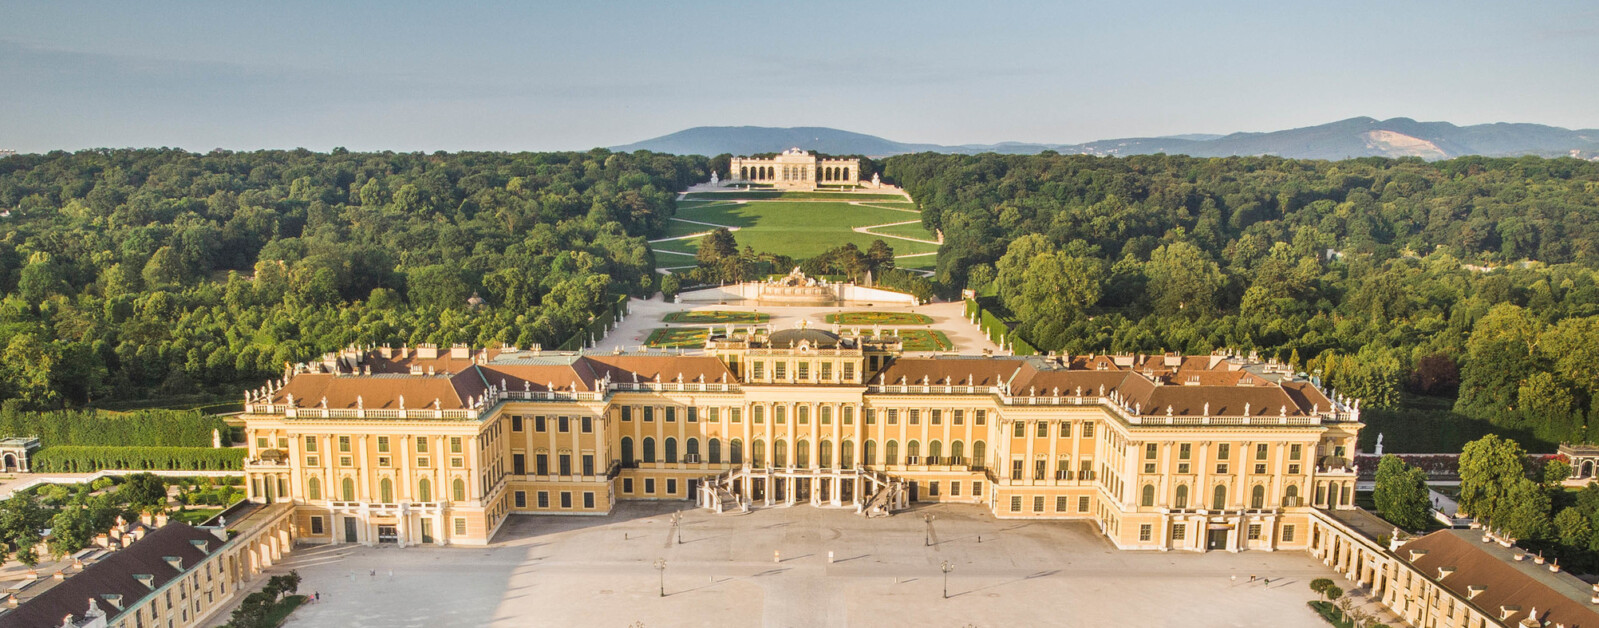 位於奧地利首都維也納的美泉宮(熊布朗宮, Schloss Schönbrunn ) 是一座充滿巴洛克藝術的皇家建築，曾是神聖羅馬帝國、奧地利帝國和奧匈帝國的御用宮殿。